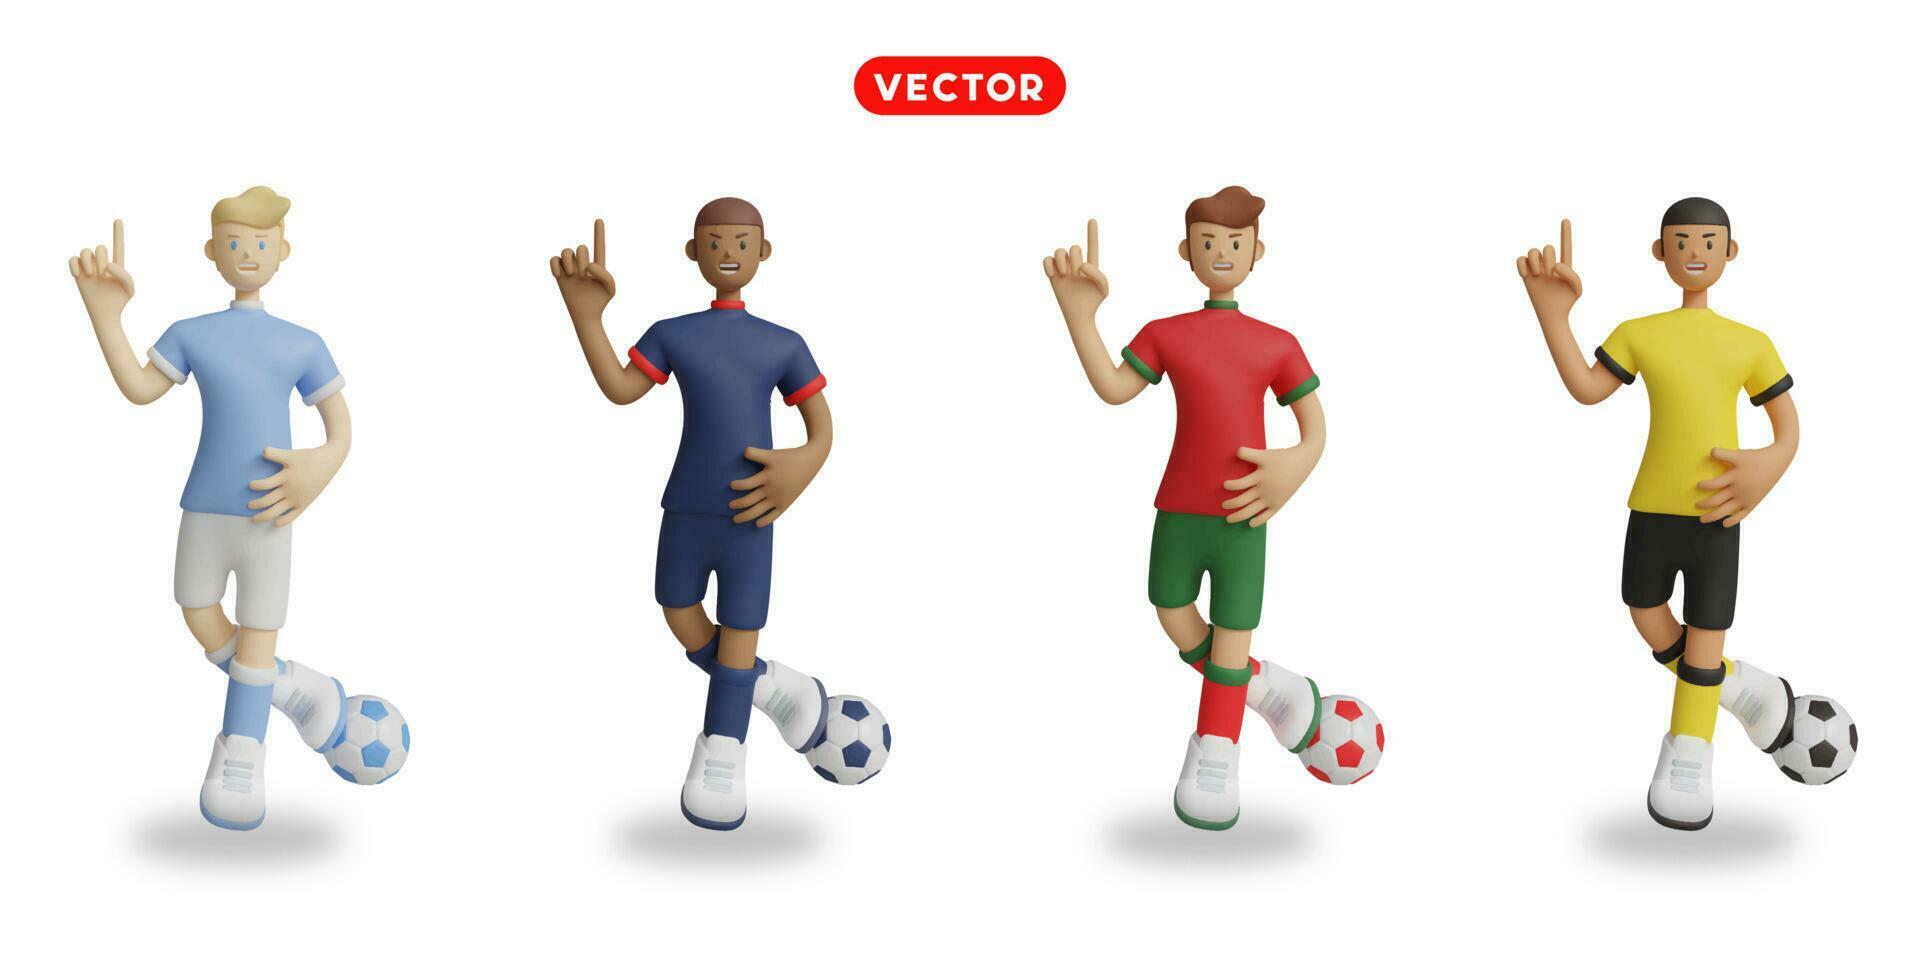 fotboll spelare i himmel blå, blå, röd med grön, och gul uniformer. vektor